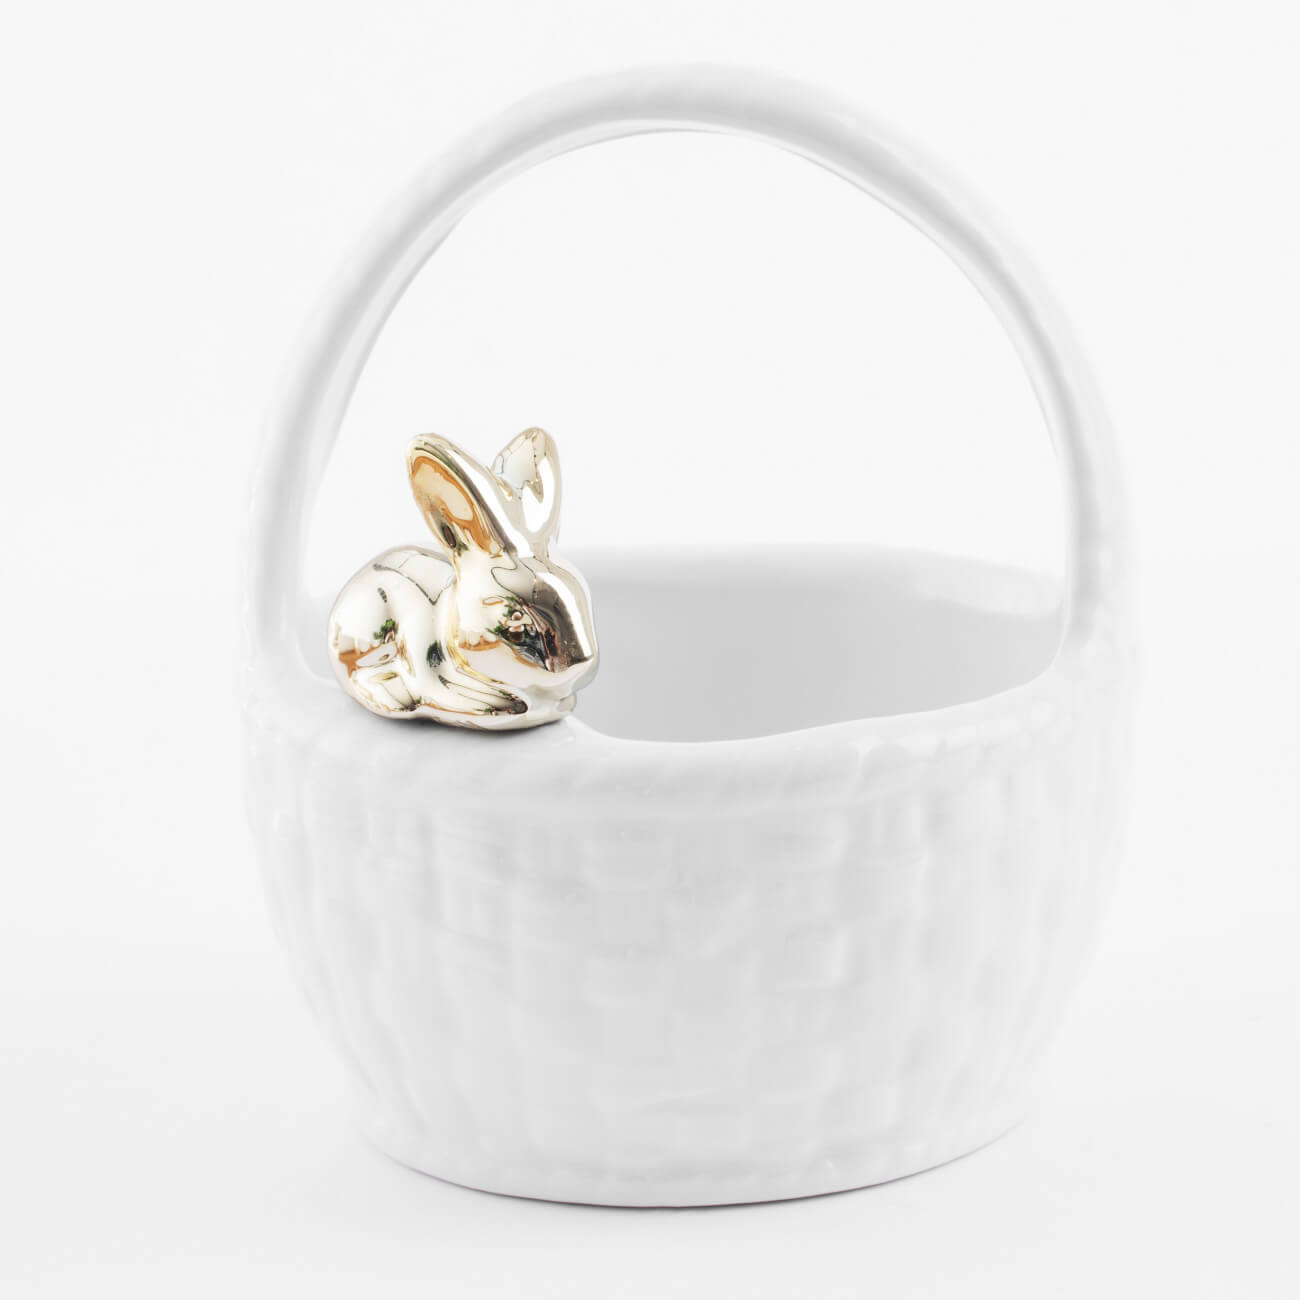 Конфетница, 12х14 см, с ручкой, керамика, белая, Кролик на корзине, Easter gold изображение № 1